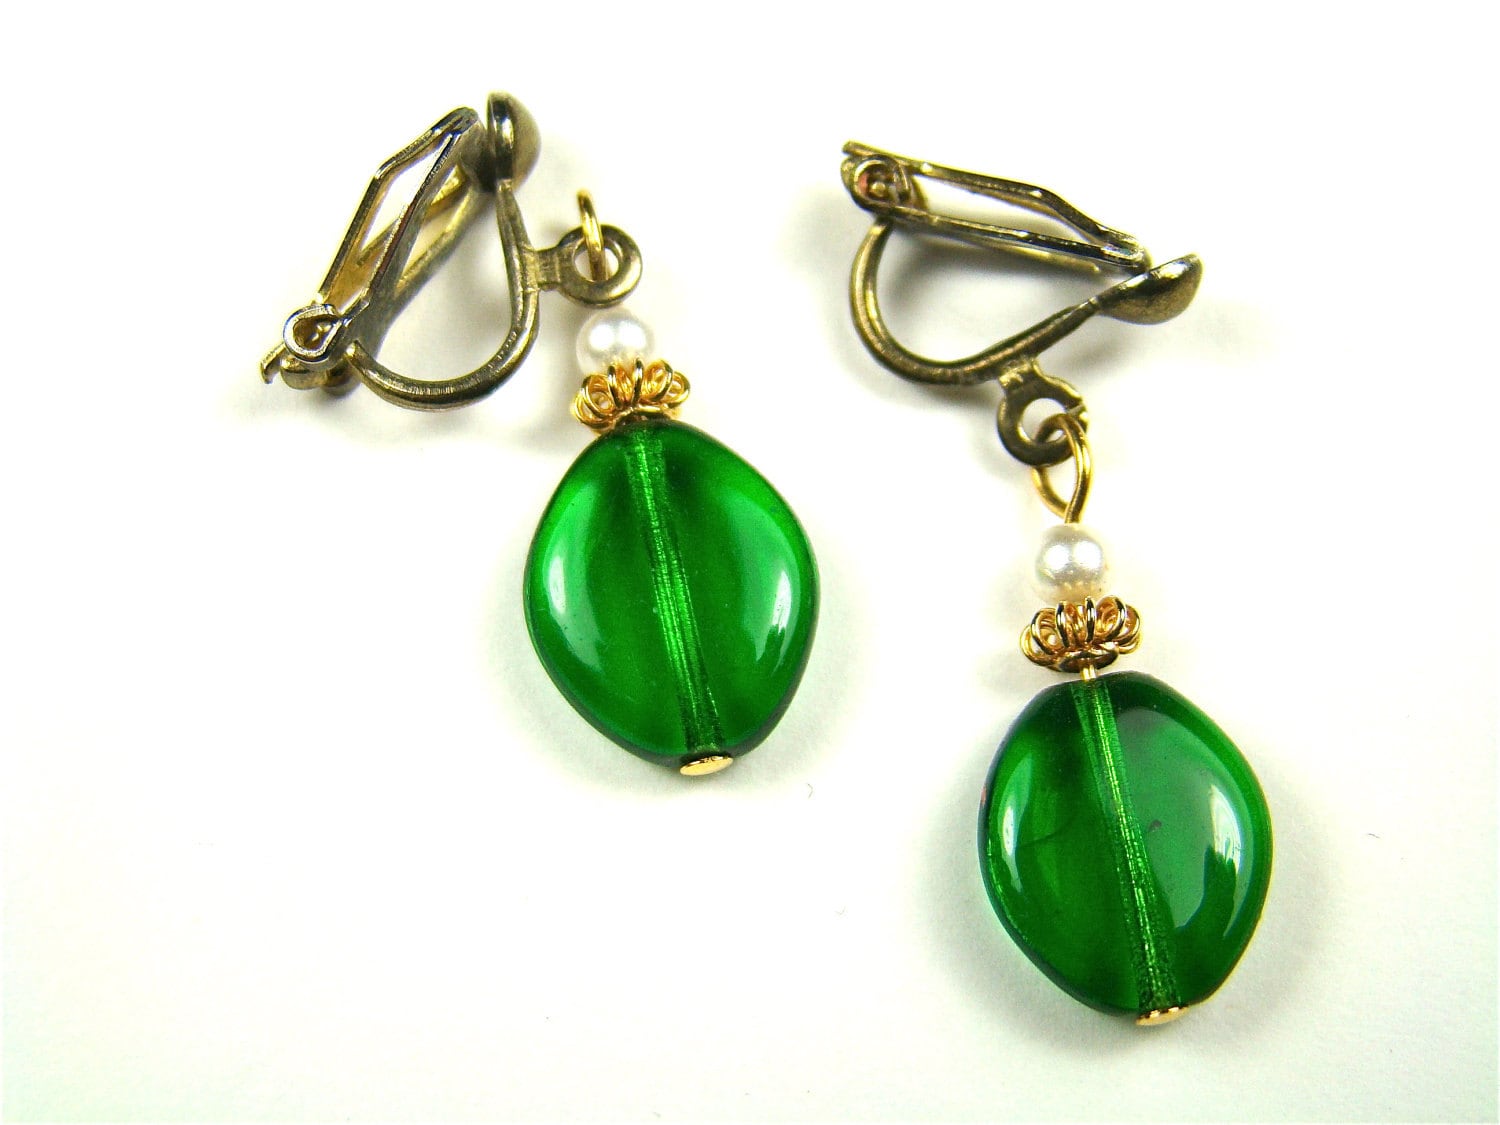 elegant earrings Jade earrings ceremony earrings silver and jade earrings vintage earrings green jade earrings